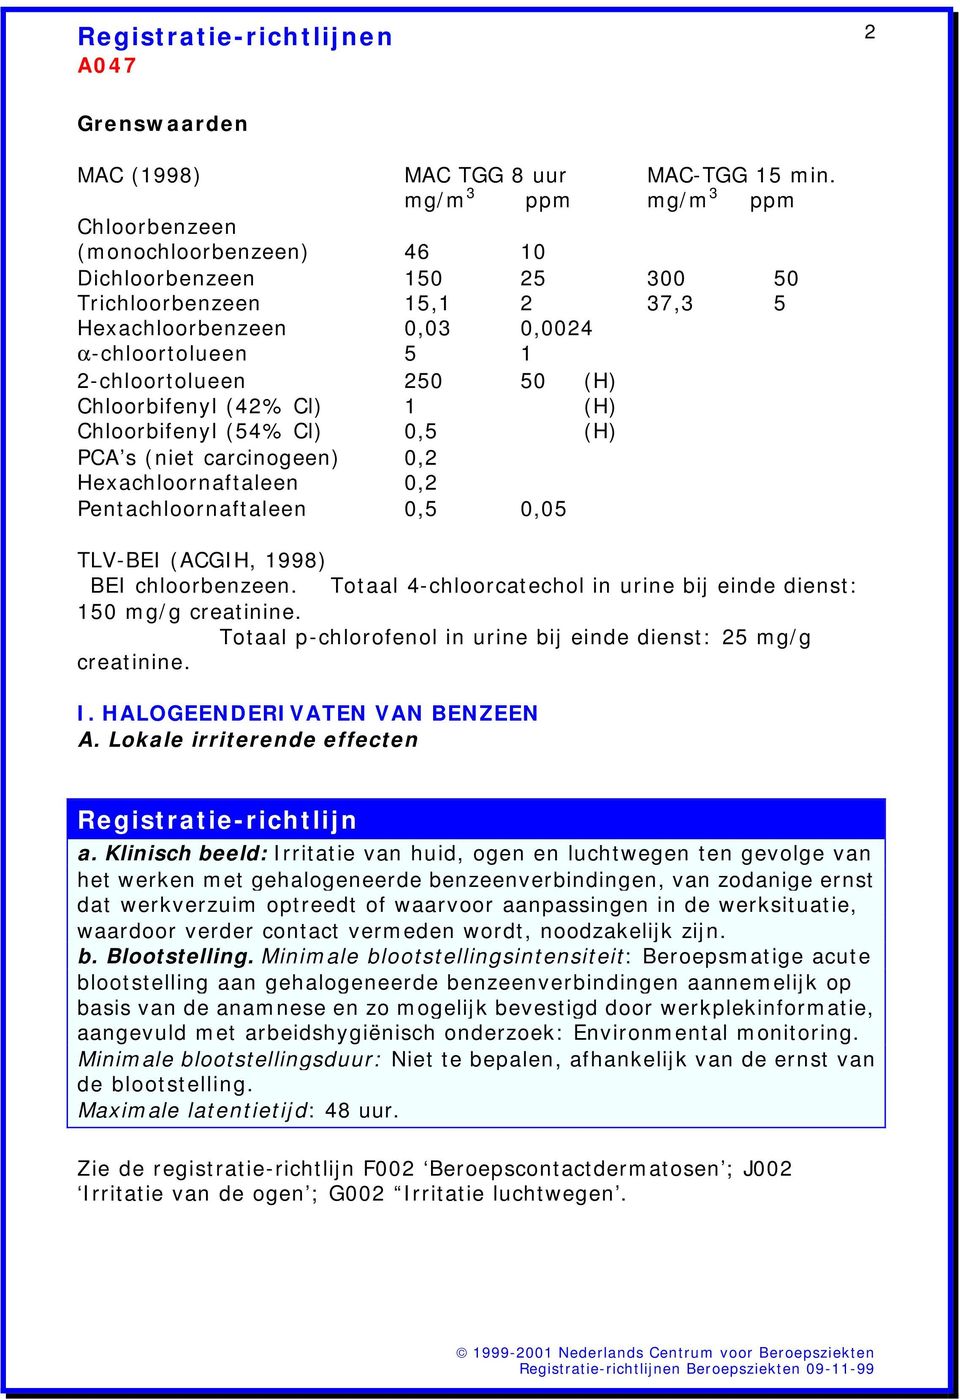 Chloorbifenyl (42% Cl) 1 (H) Chloorbifenyl (54% Cl) 0,5 (H) PCA s (niet carcinogeen) 0,2 Hexachloornaftaleen 0,2 Pentachloornaftaleen 0,5 0,05 TLV-BEI (ACGIH, 1998) BEI chloorbenzeen.